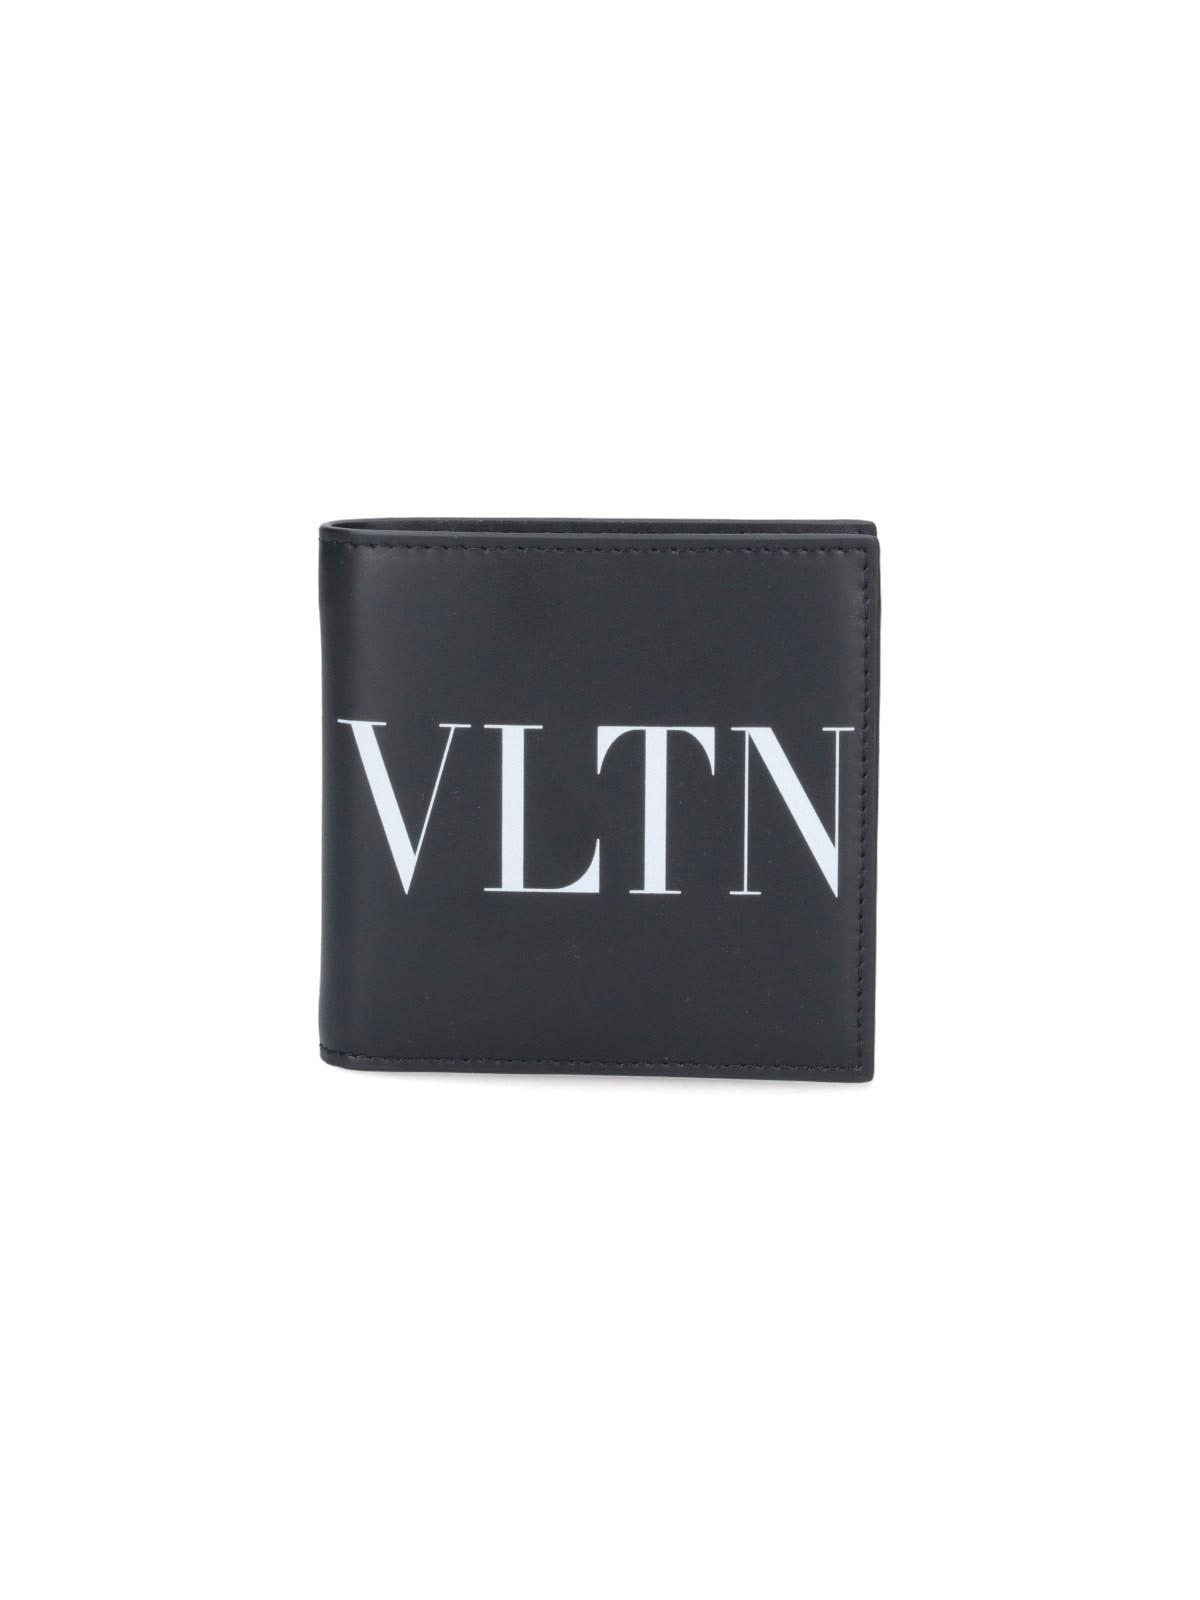 Shop Valentino Logo Wallet In Black